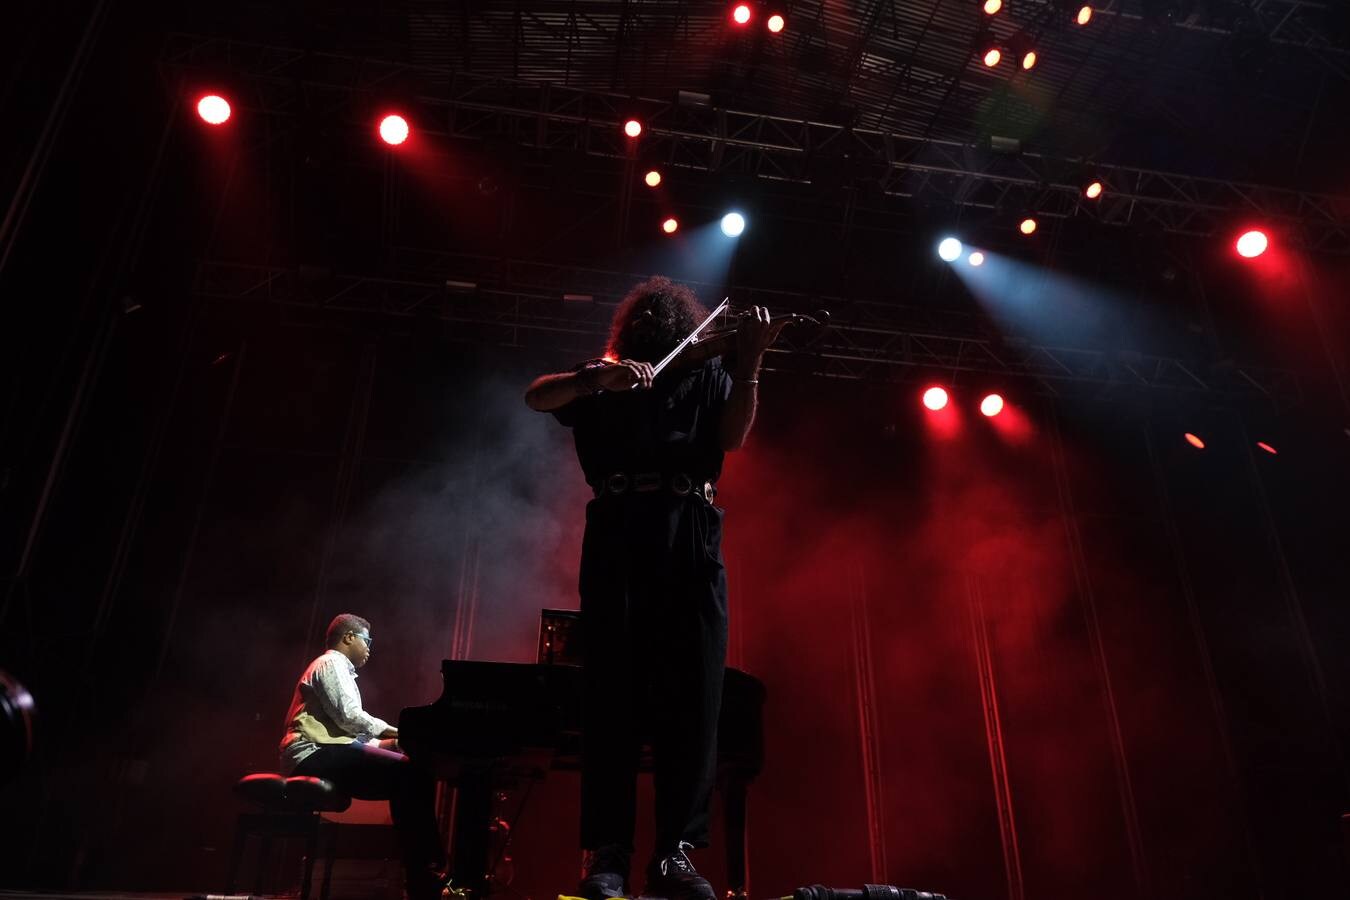 FOTOS: Velada mágica con violín y piano gracias al gran Ara Malikian en el Concert Music Festival